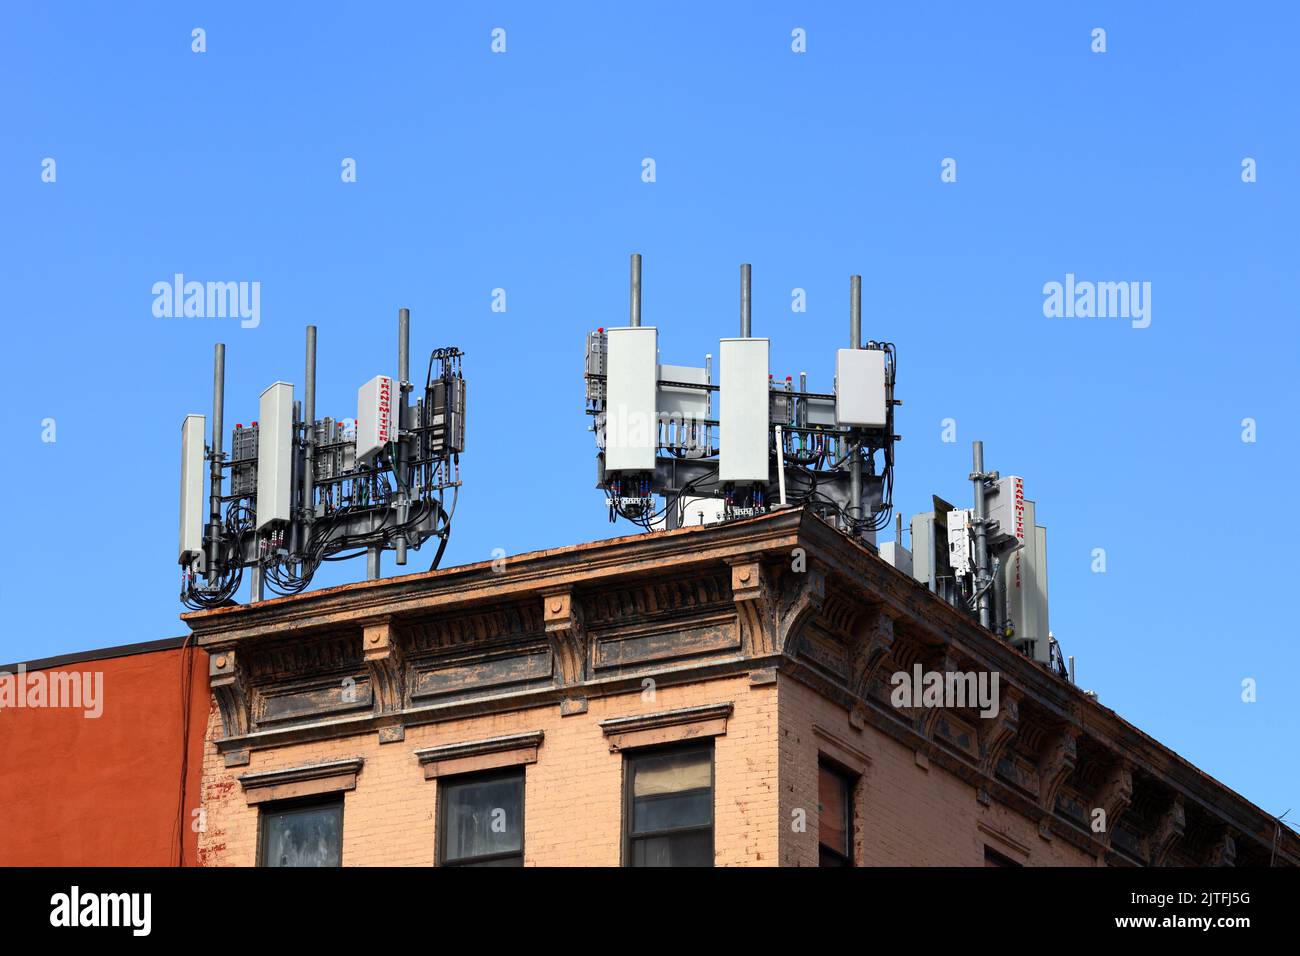 Équipement de télécommunications mobiles sur un toit avec émetteurs réseau LTE 4G 5G, wifi, sans fil, autres antennes de téléphonie cellulaire et infrastructure Banque D'Images